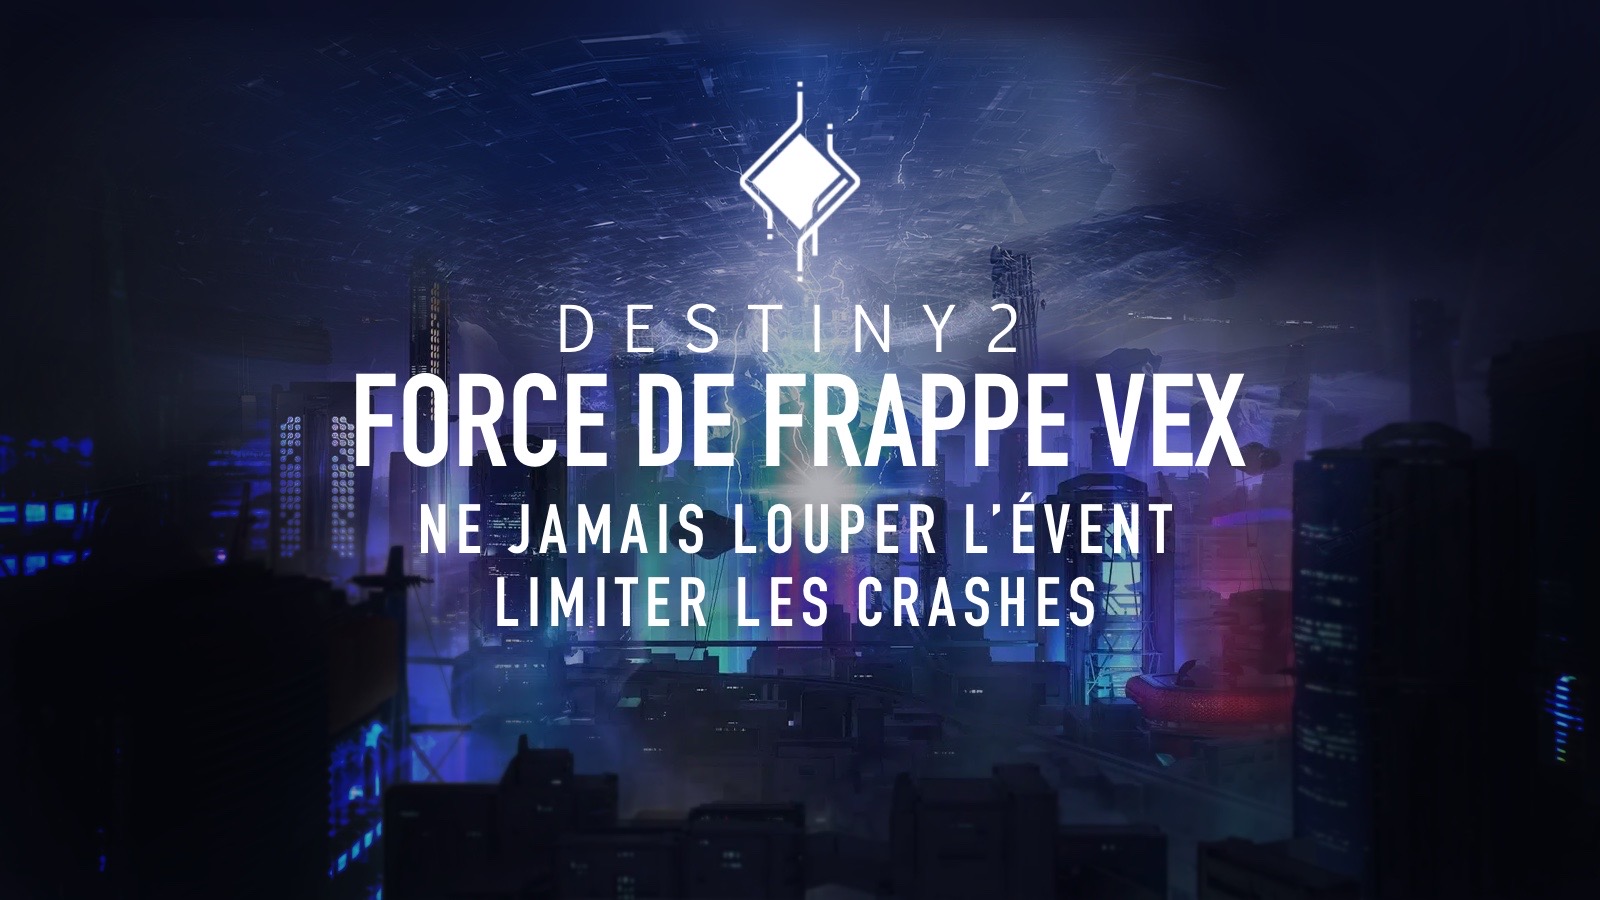 Destiny 2 - Force de Frappe Vex : Comment ne jamais louper l'évènement et éviter les crash ?